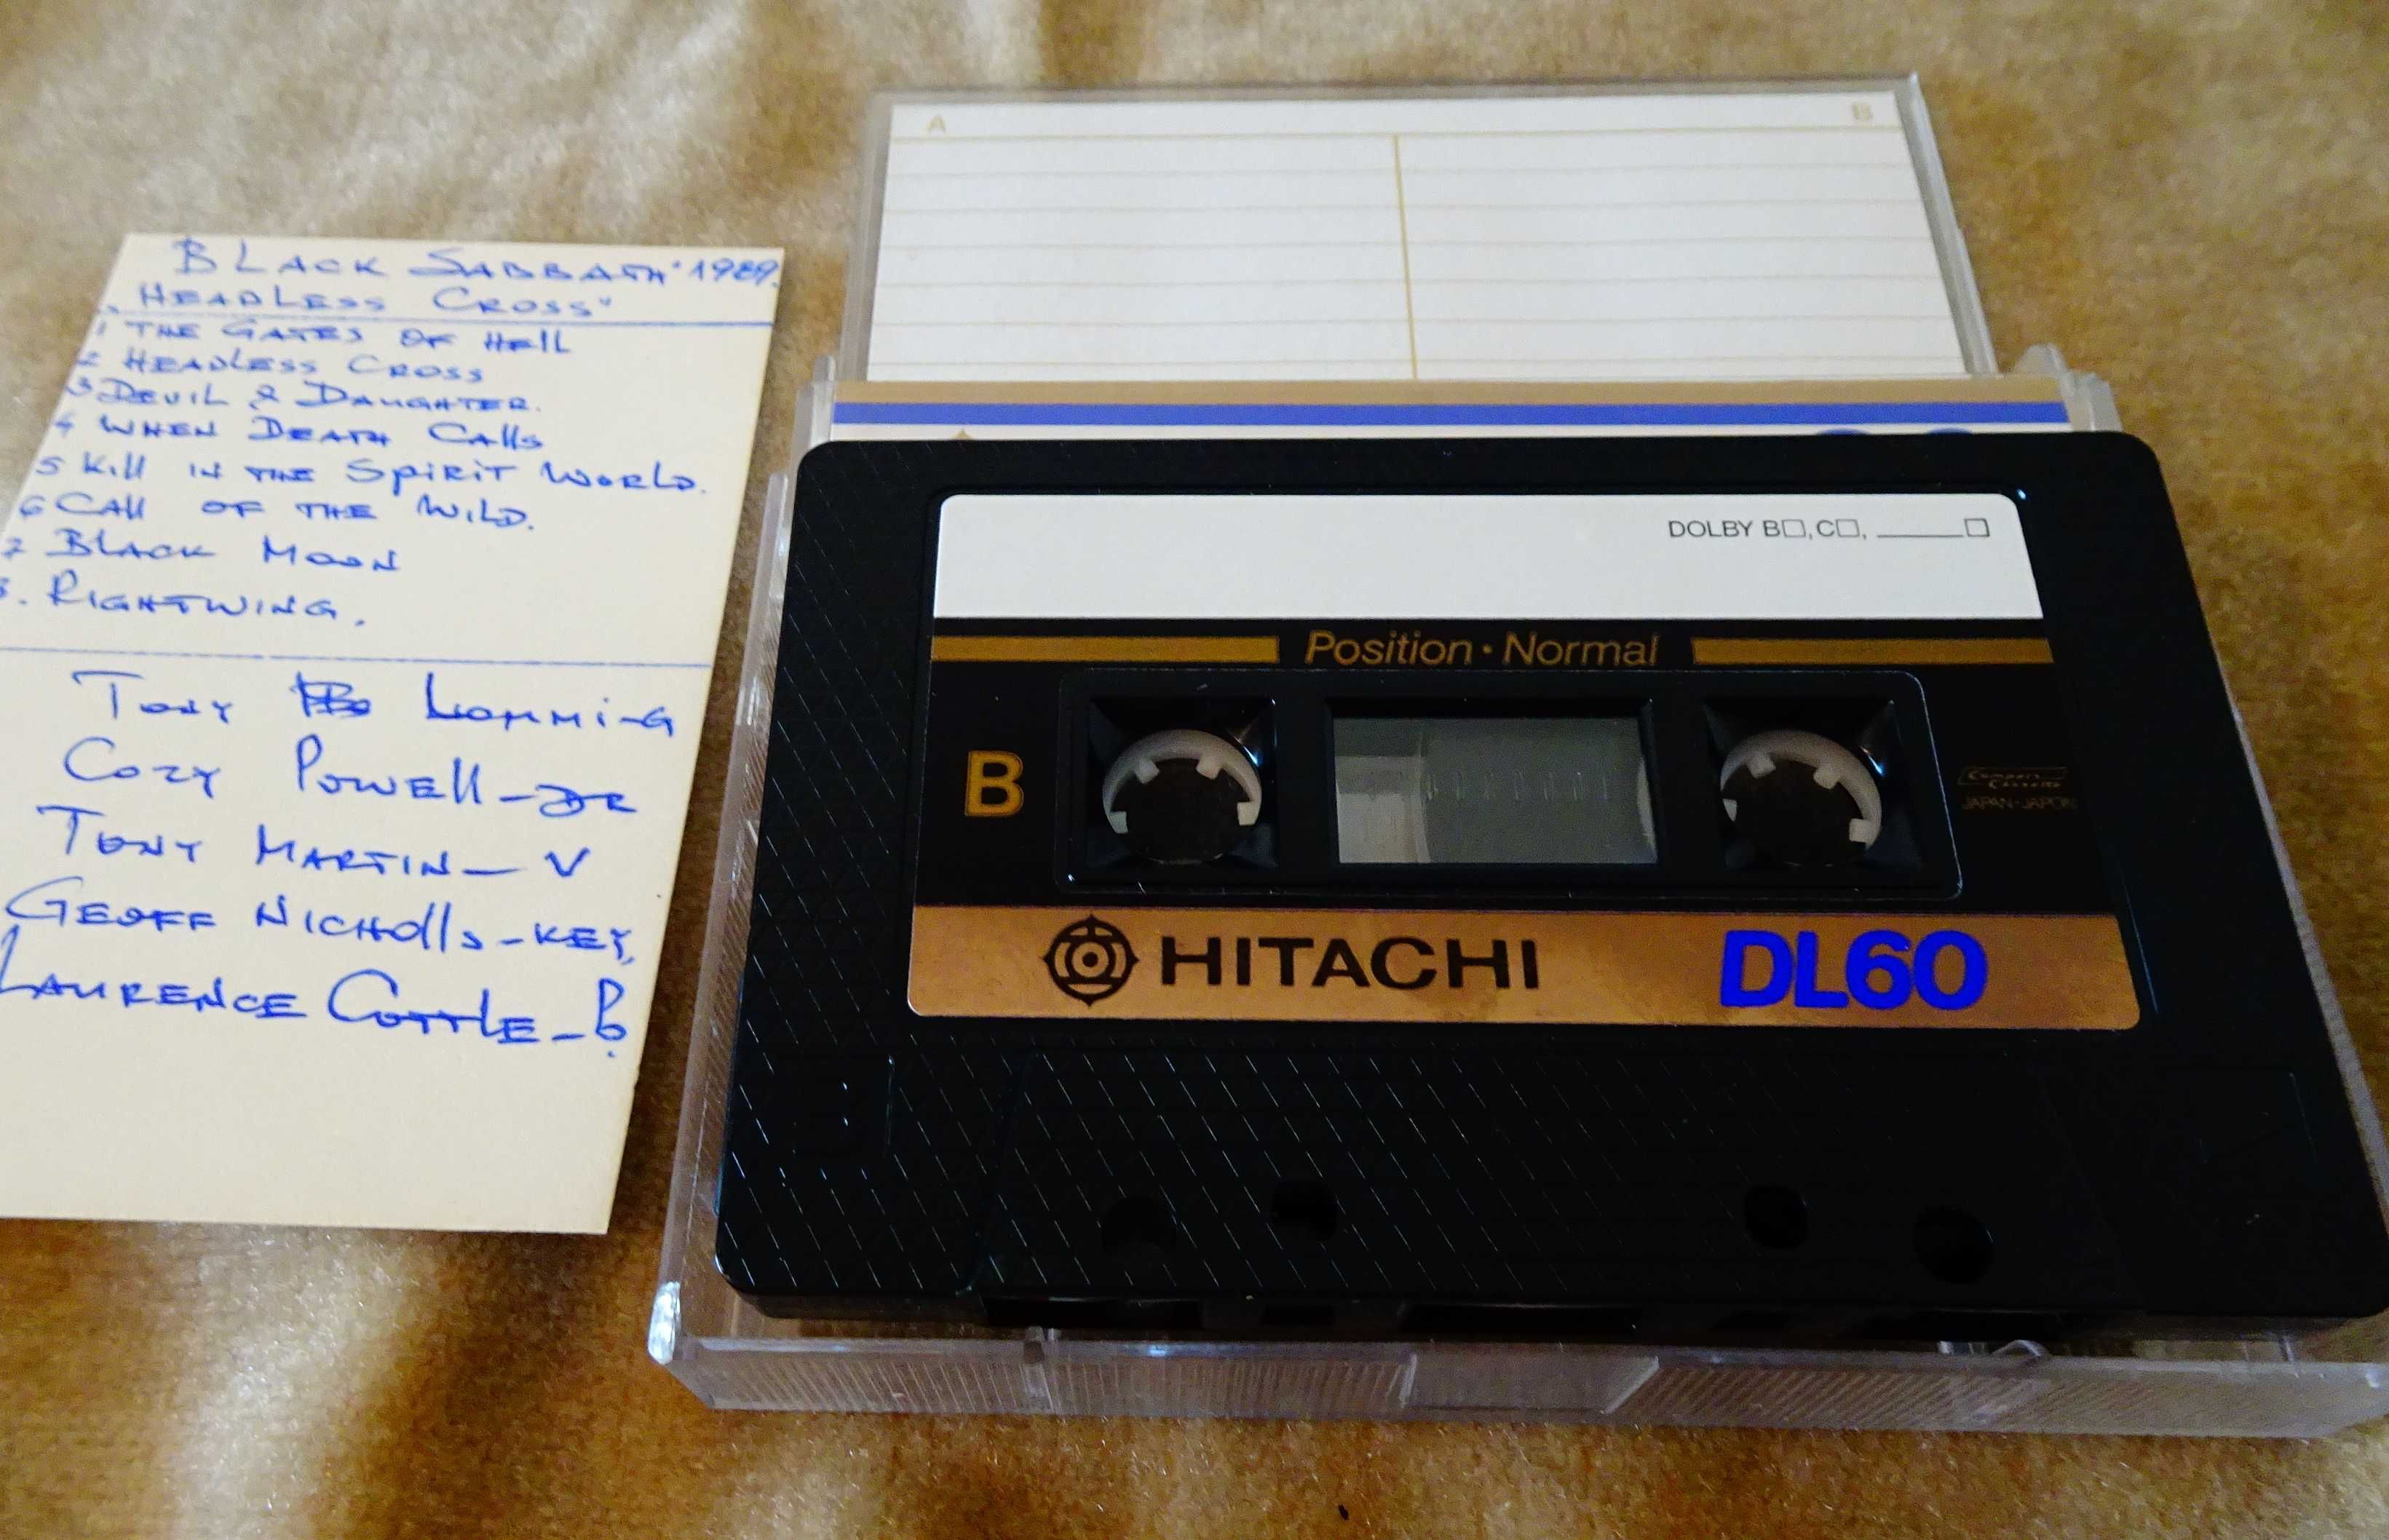 Аудиокасети Hitachi с Black Sabbath.